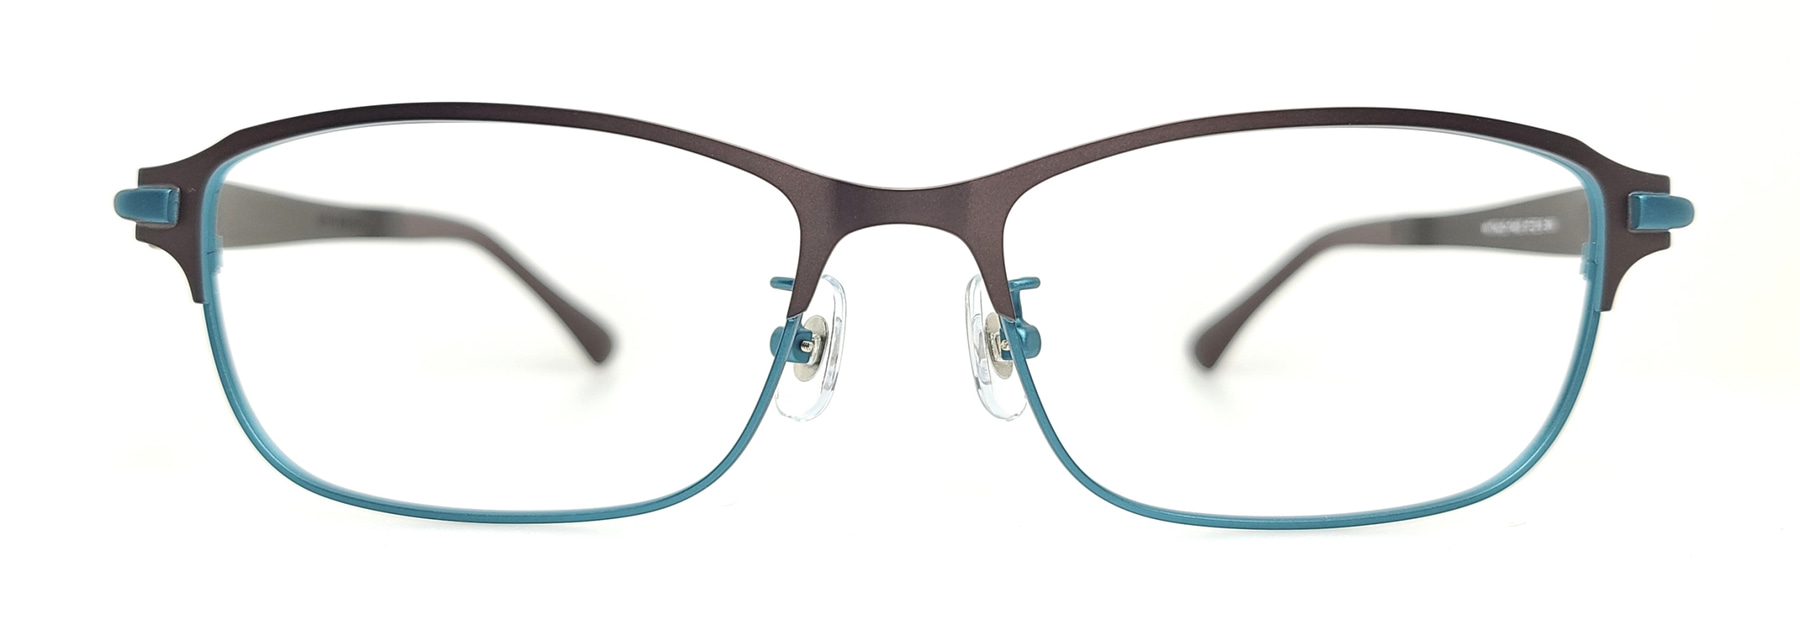 WITHUS-7400, Korean glasses, sunglasses, eyeglasses, glasses